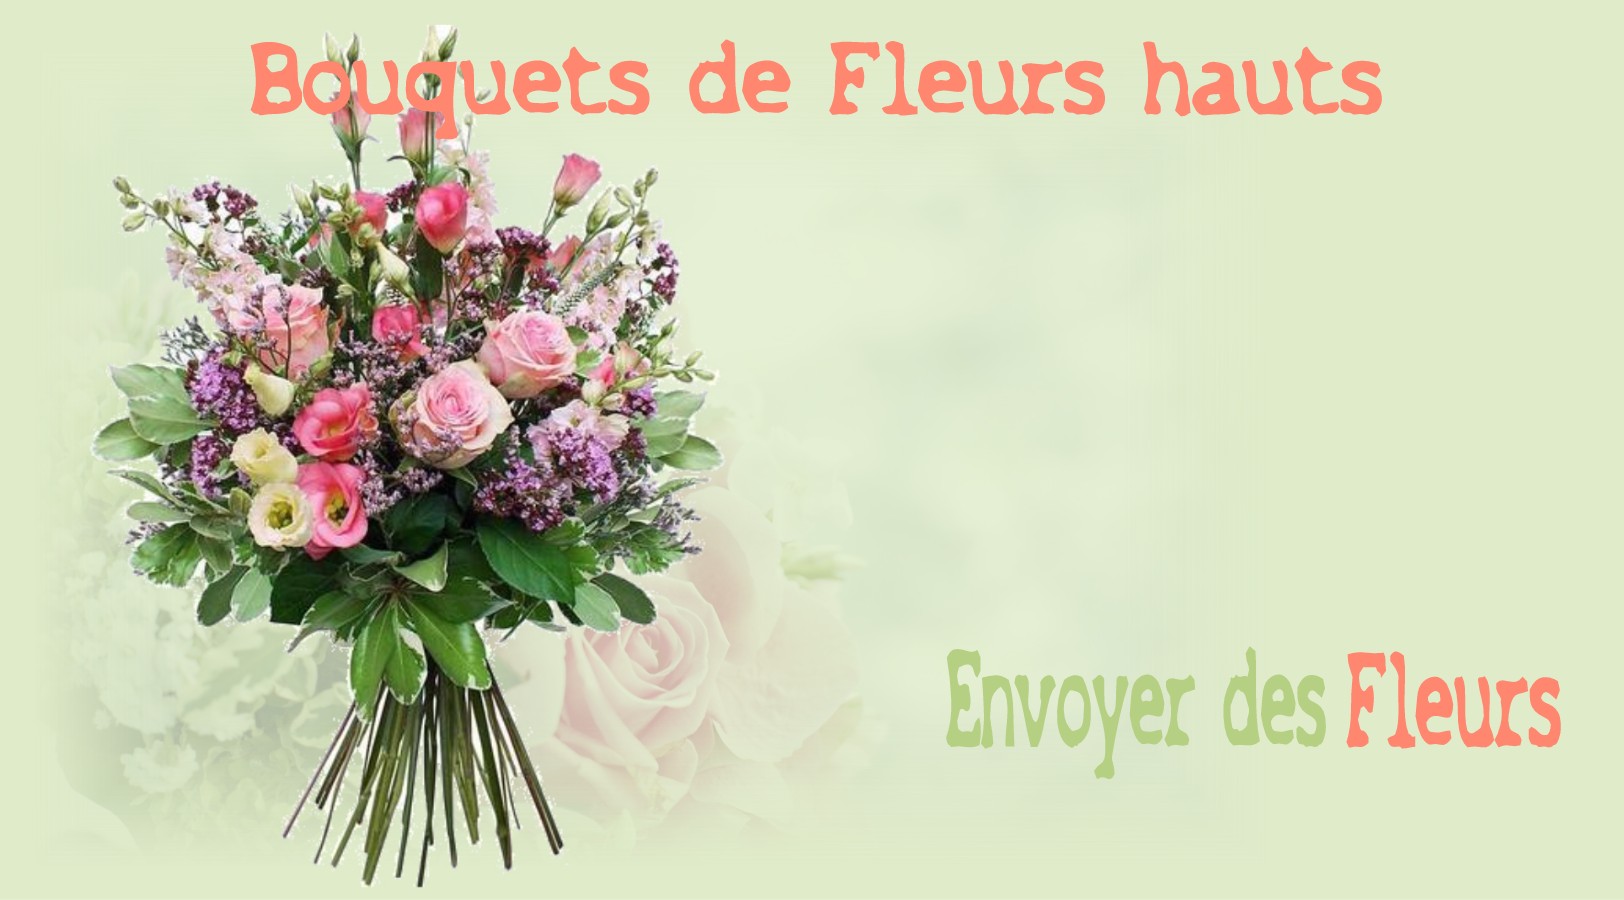 BOUQUETS DE FLEURS HAUTS